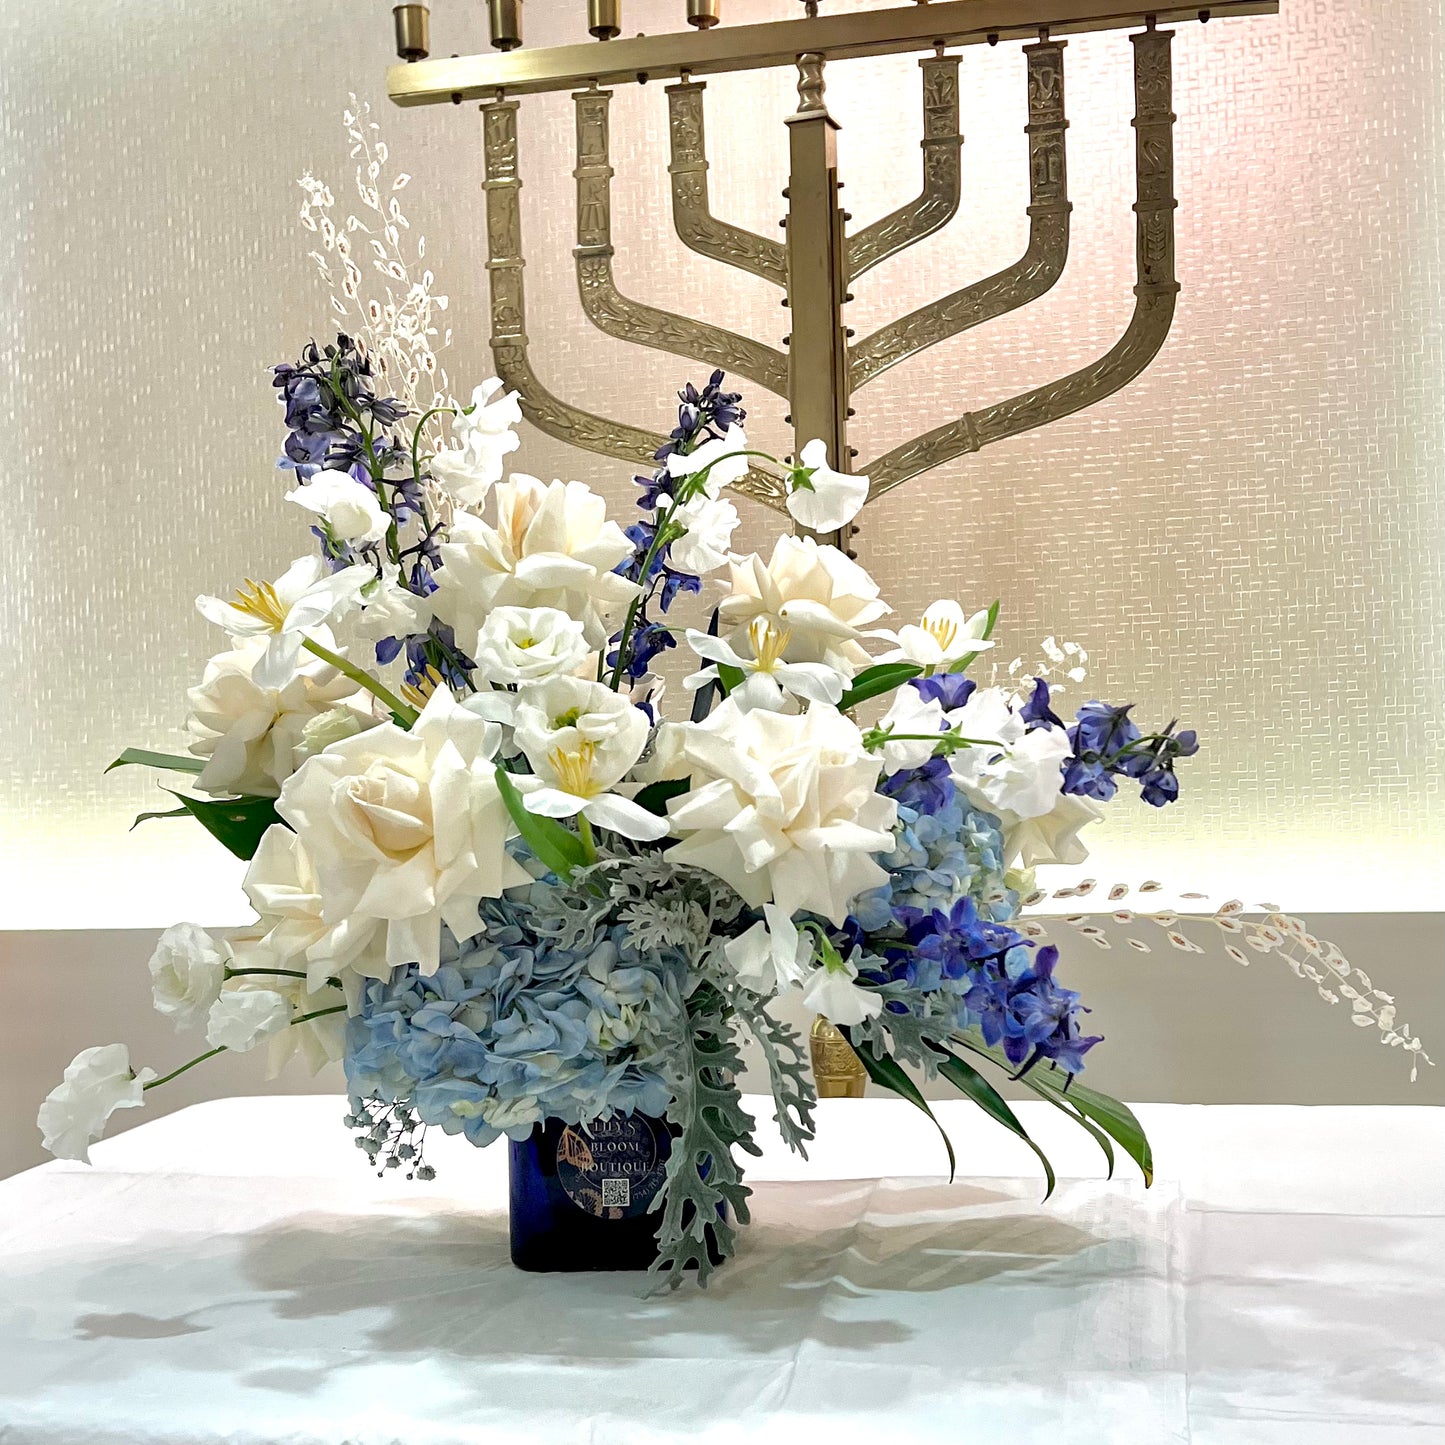 Shabbat Flowers